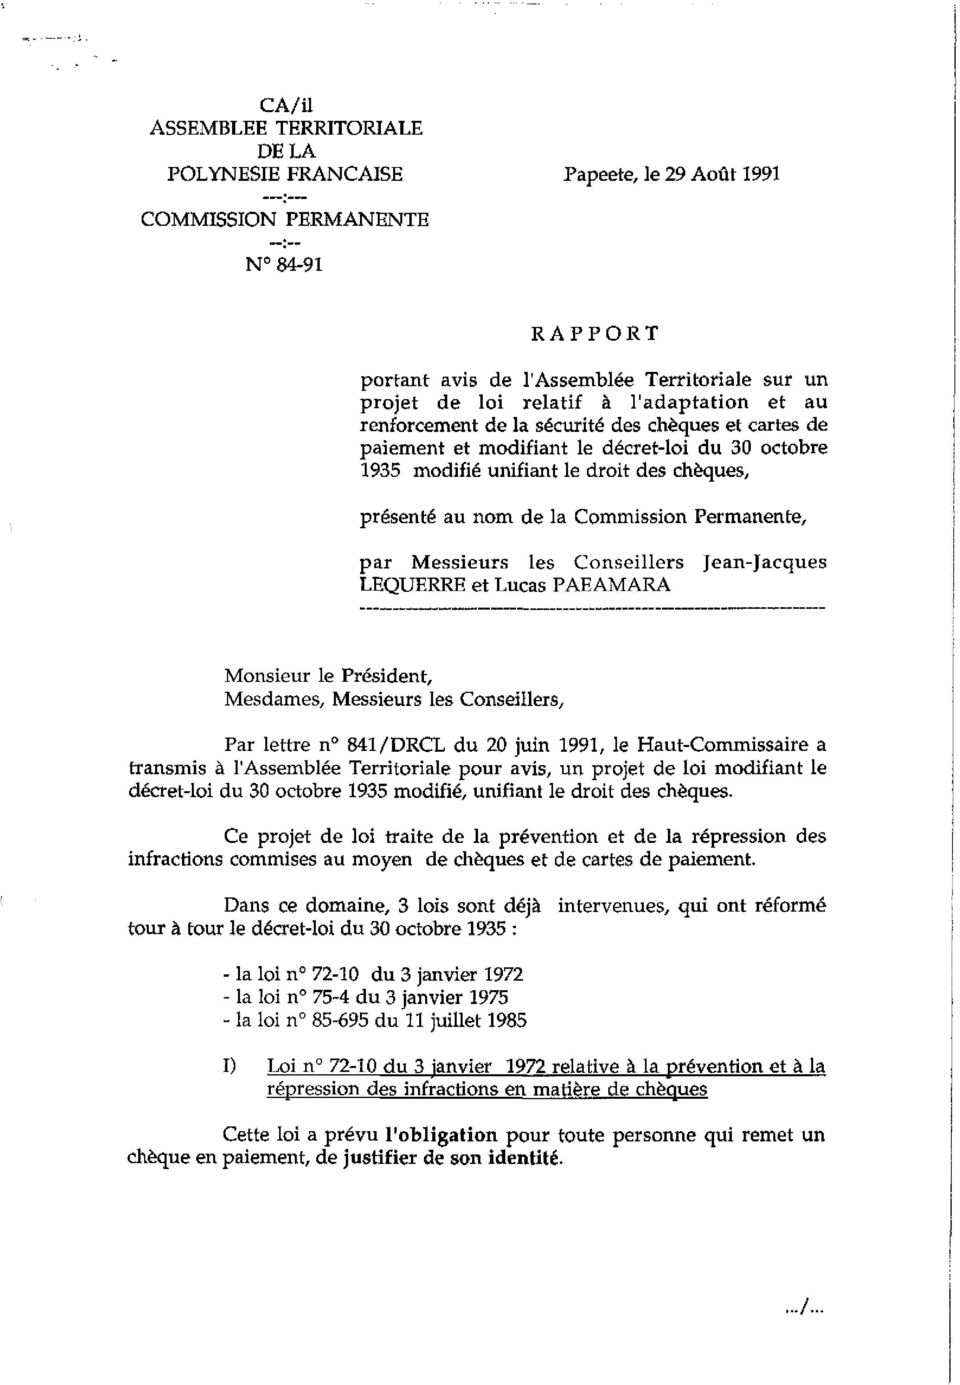 Permanente / par Messieurs les Conseillers LEQUERRE et Lucas PAEAMARA Jean-Jacques Monsieur le Président, Mesdames/ Messieurs les Conseillers/ Par lettre n 841/DRCL du 20 juin 1991, le